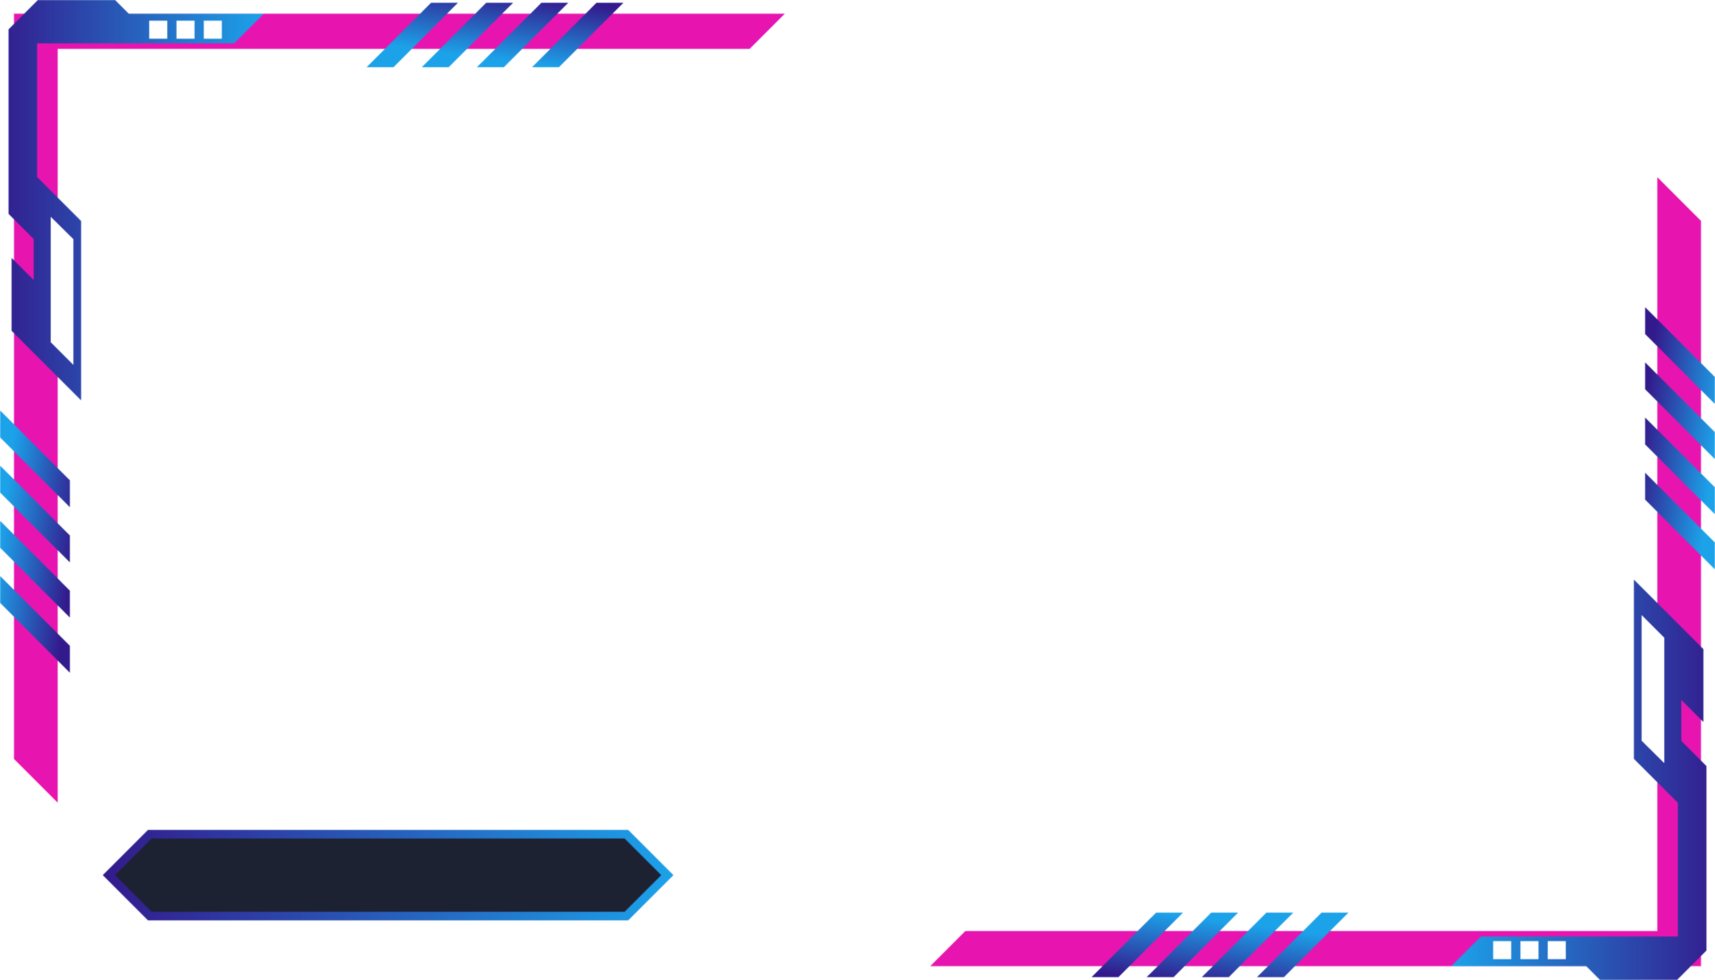 panel de pantalla de juego futurista simple png con formas abstractas. superposición de transmisión de juegos en línea y diseño de interfaz de usuario con colores rosa y azul. imagen del panel de superposición de juegos metálicos.